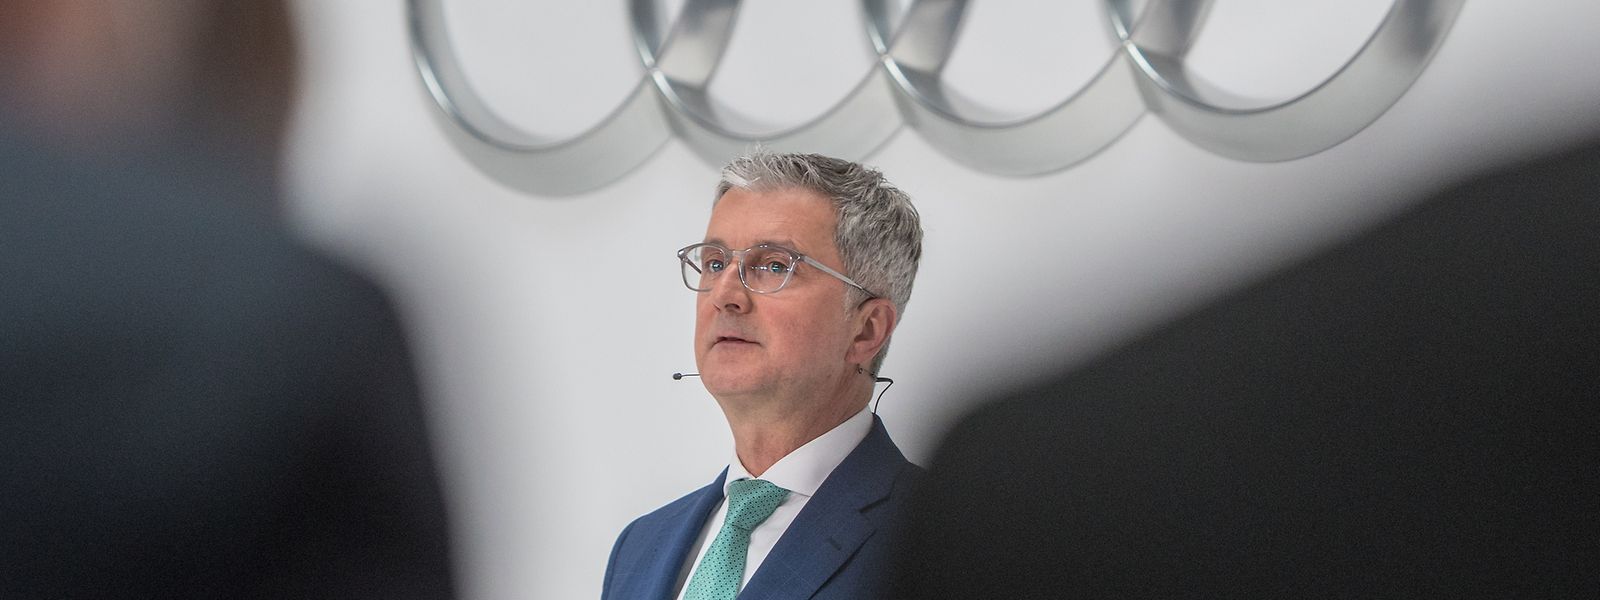 Die VW-Aufsichtsräte berieten am Dienstag über die Zukunft des inhaftierten und beurlaubten Managers.